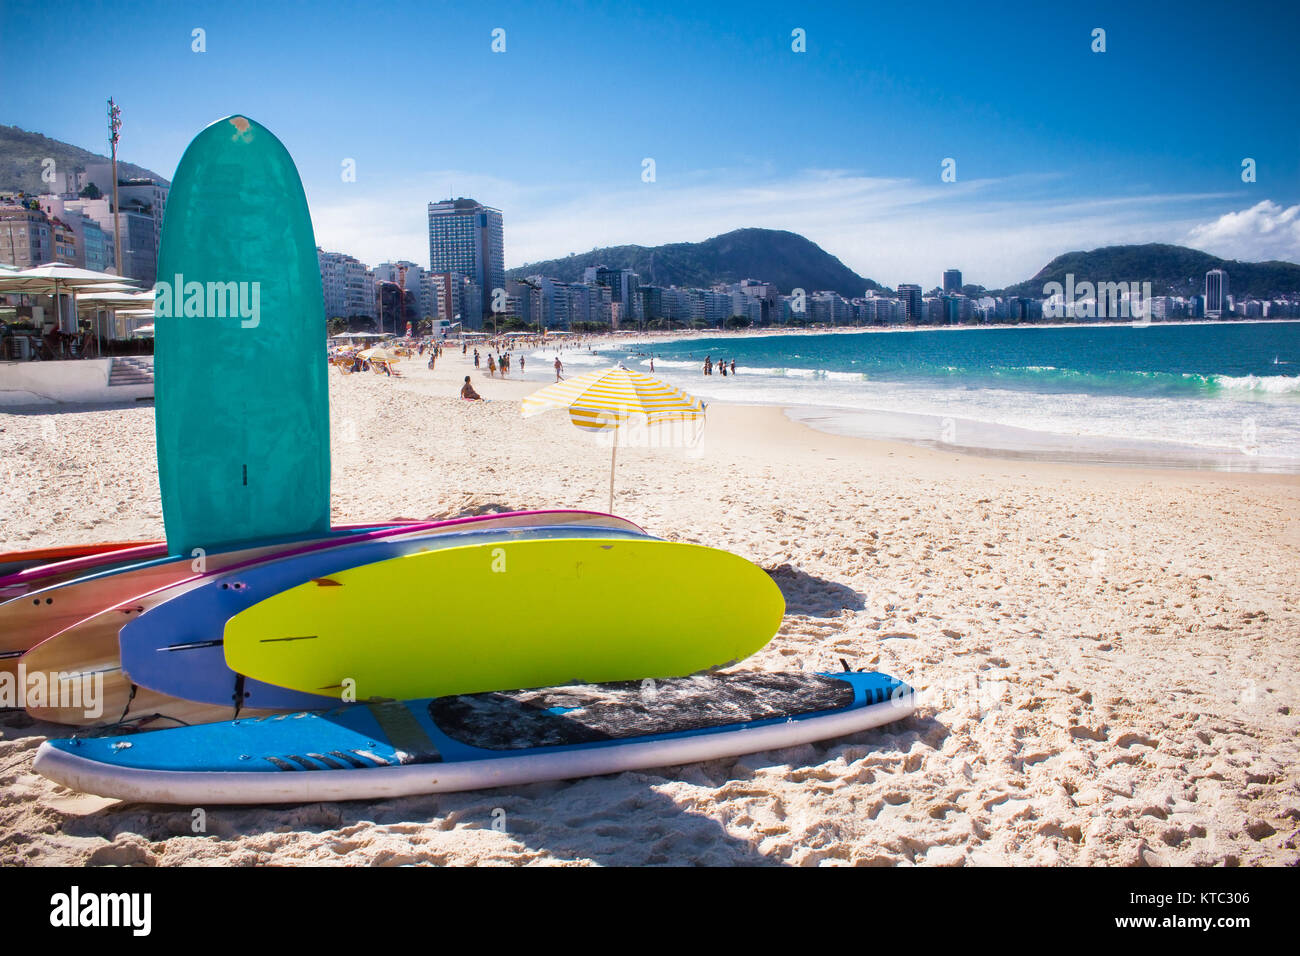 RIO DE JANEIRO, BRAZIL - APRIL 24, 2015: Surfboard and Brazilians on April 24, 2015 at Copacabana Beach, Rio de Janeiro. Brazil. Stock Photo